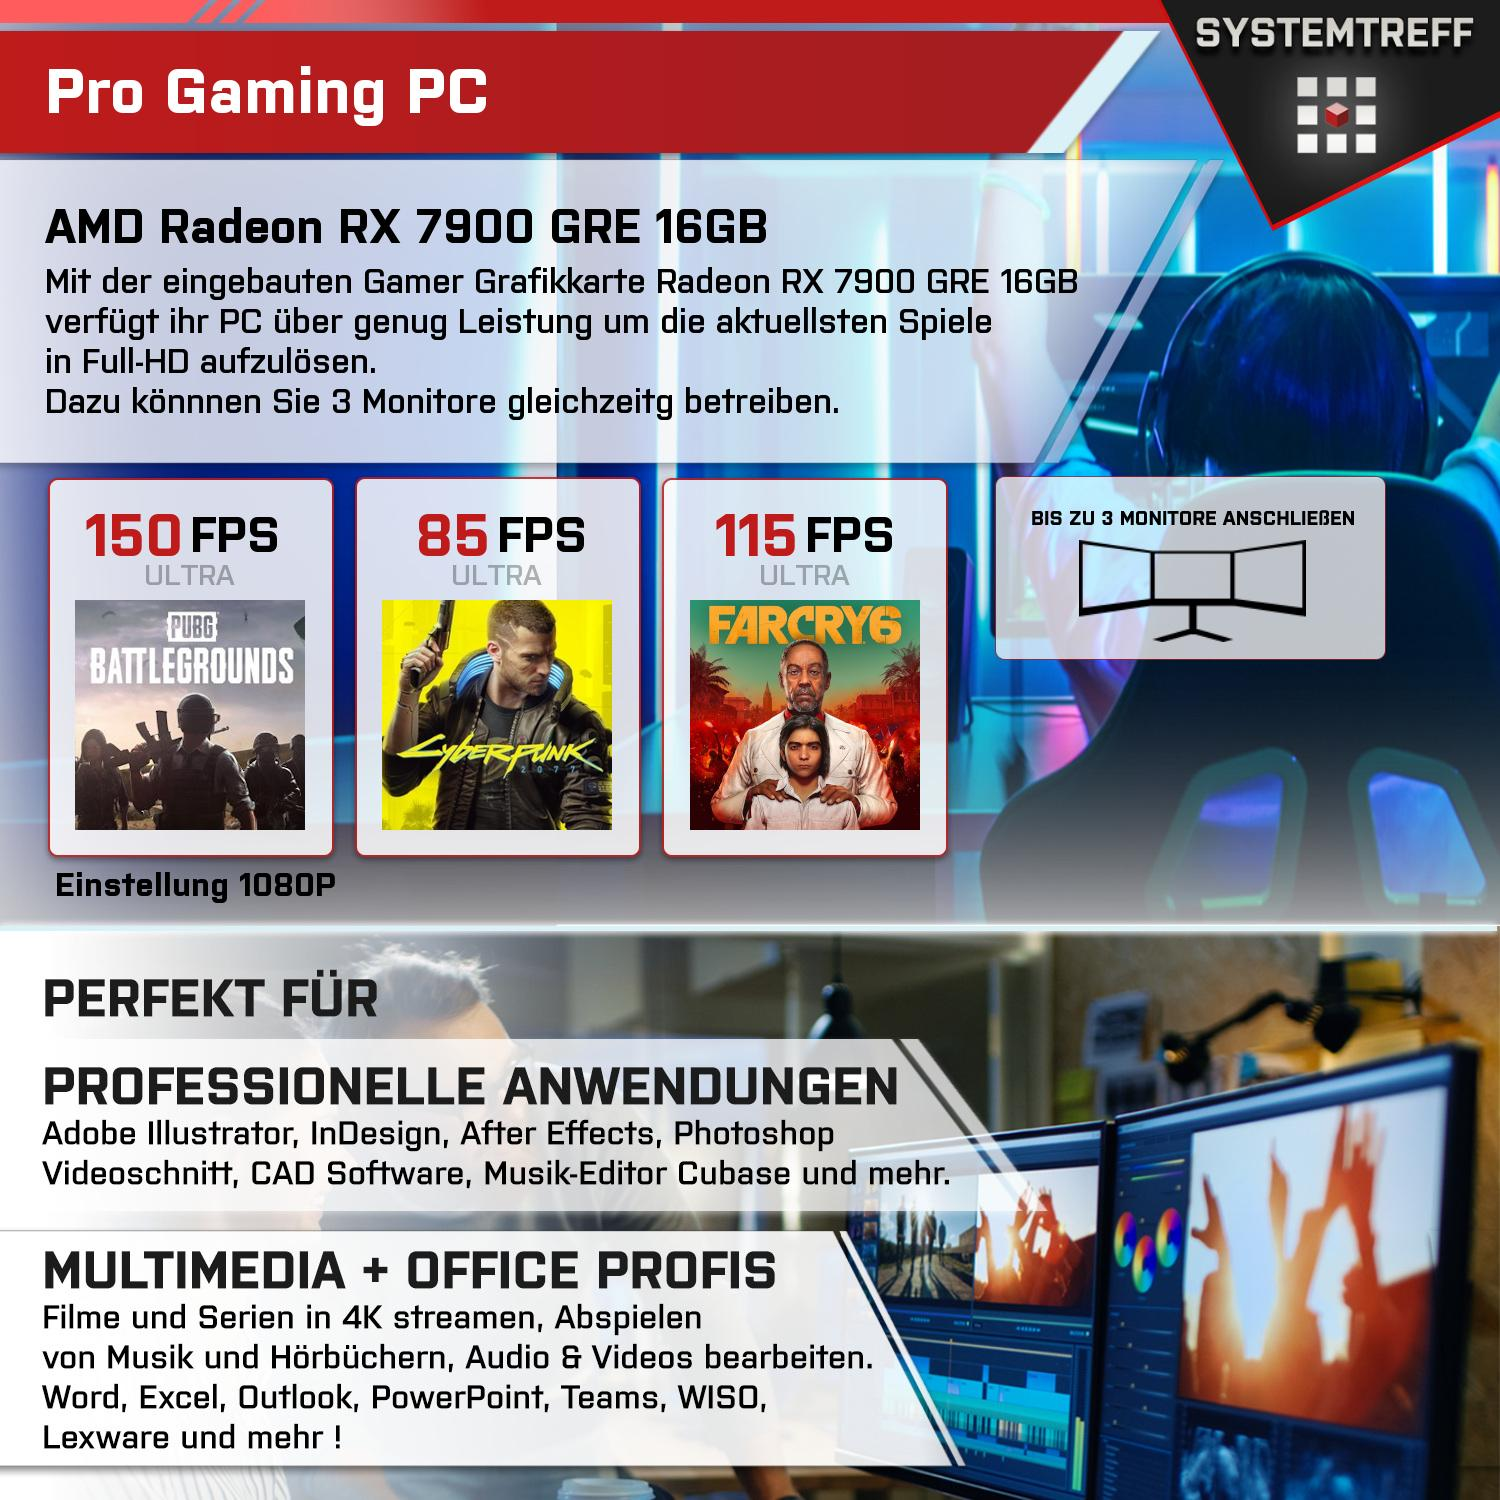 SYSTEMTREFF Gaming Komplett AMD Ryzen 9 Komplett 7950X3D 1000 RAM, mit 7950X3D, GB 32 Prozessor, mSSD, PC GB 16 GB